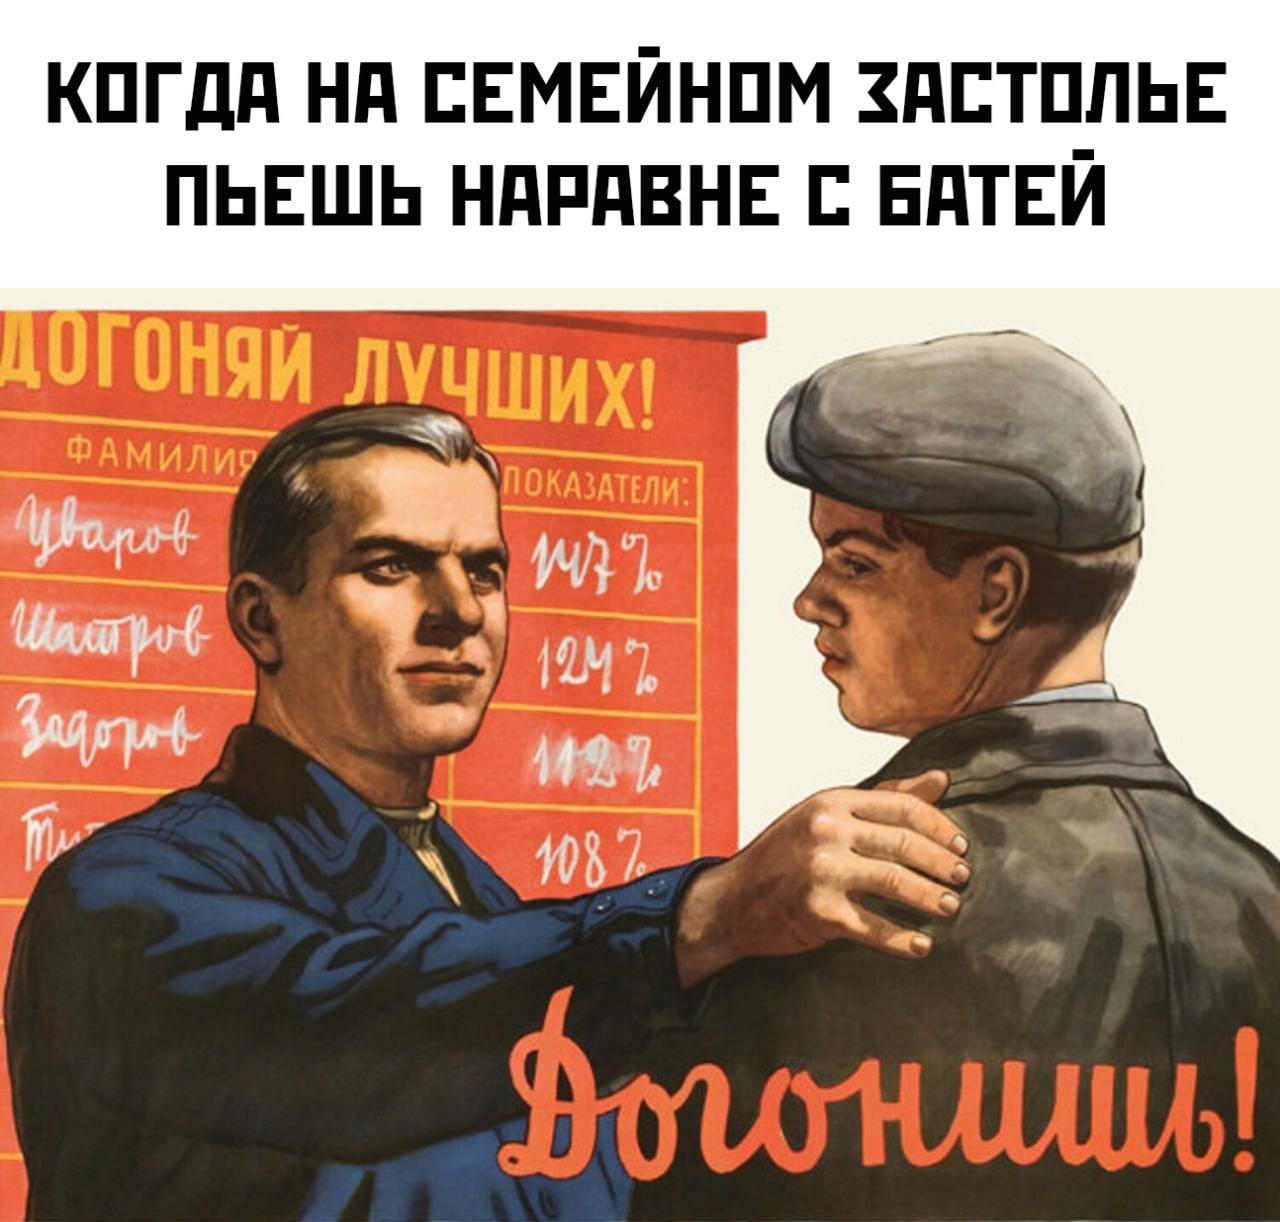 Как правильно догонишь или догонишь. Советские плакаты товарищ. Прикольные переделанные советские плакаты. Советские плакаты про работу. Советские плакаты приколы юмор.